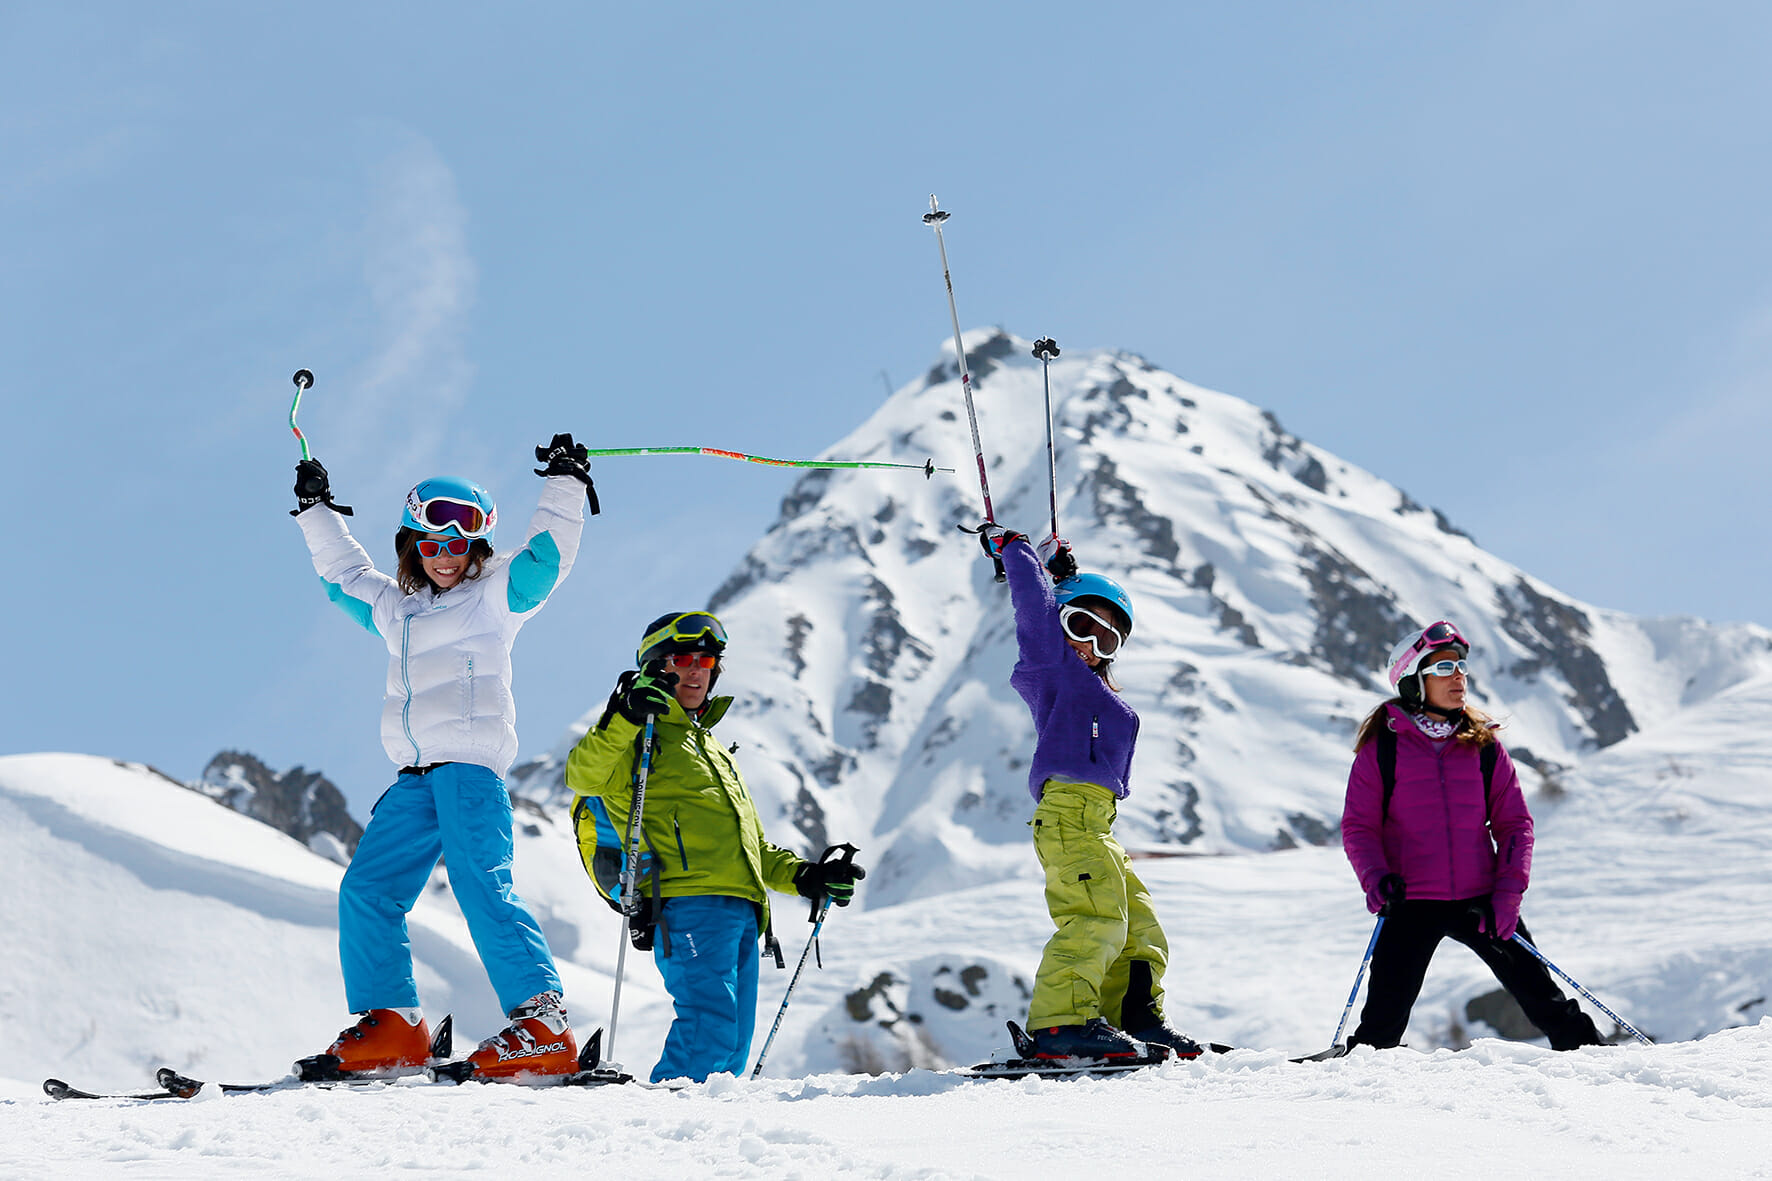 Ski alpin et préparation physique: 5 exercices incontournables